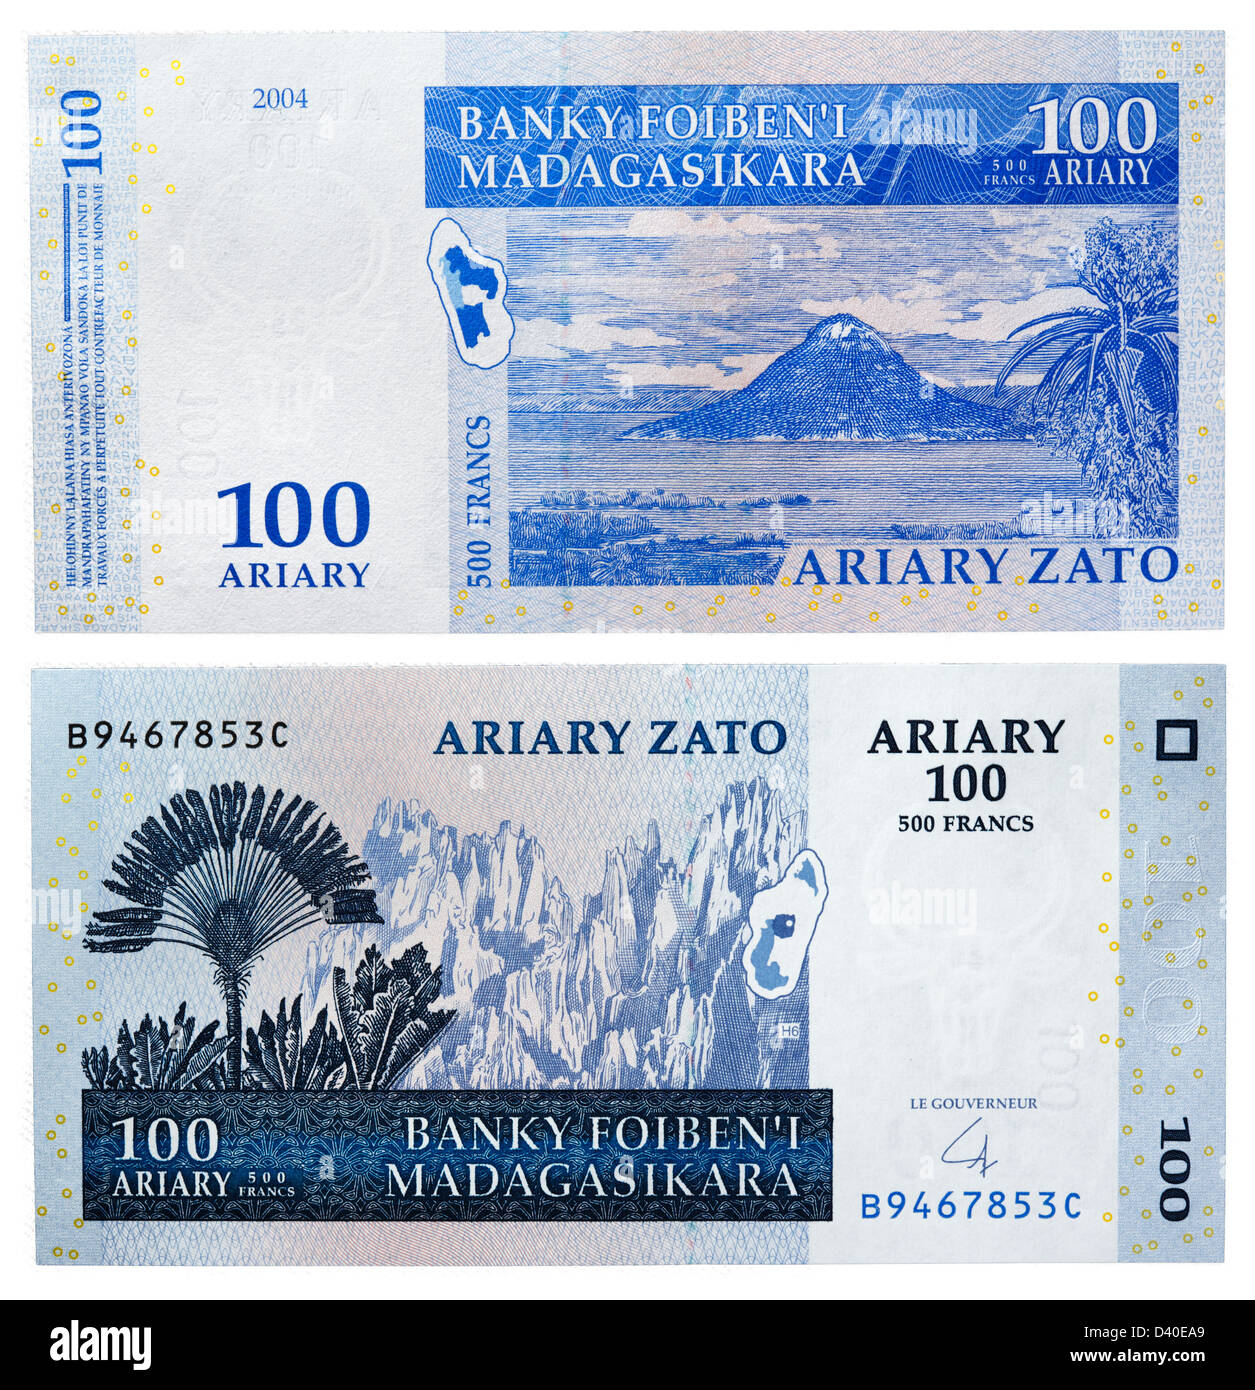 100 Ariary banknote, Ravinala and Tsingi plants and Sugarloaf mountain at Antsiranana bay, Madagascar, 2004 Stock Photo